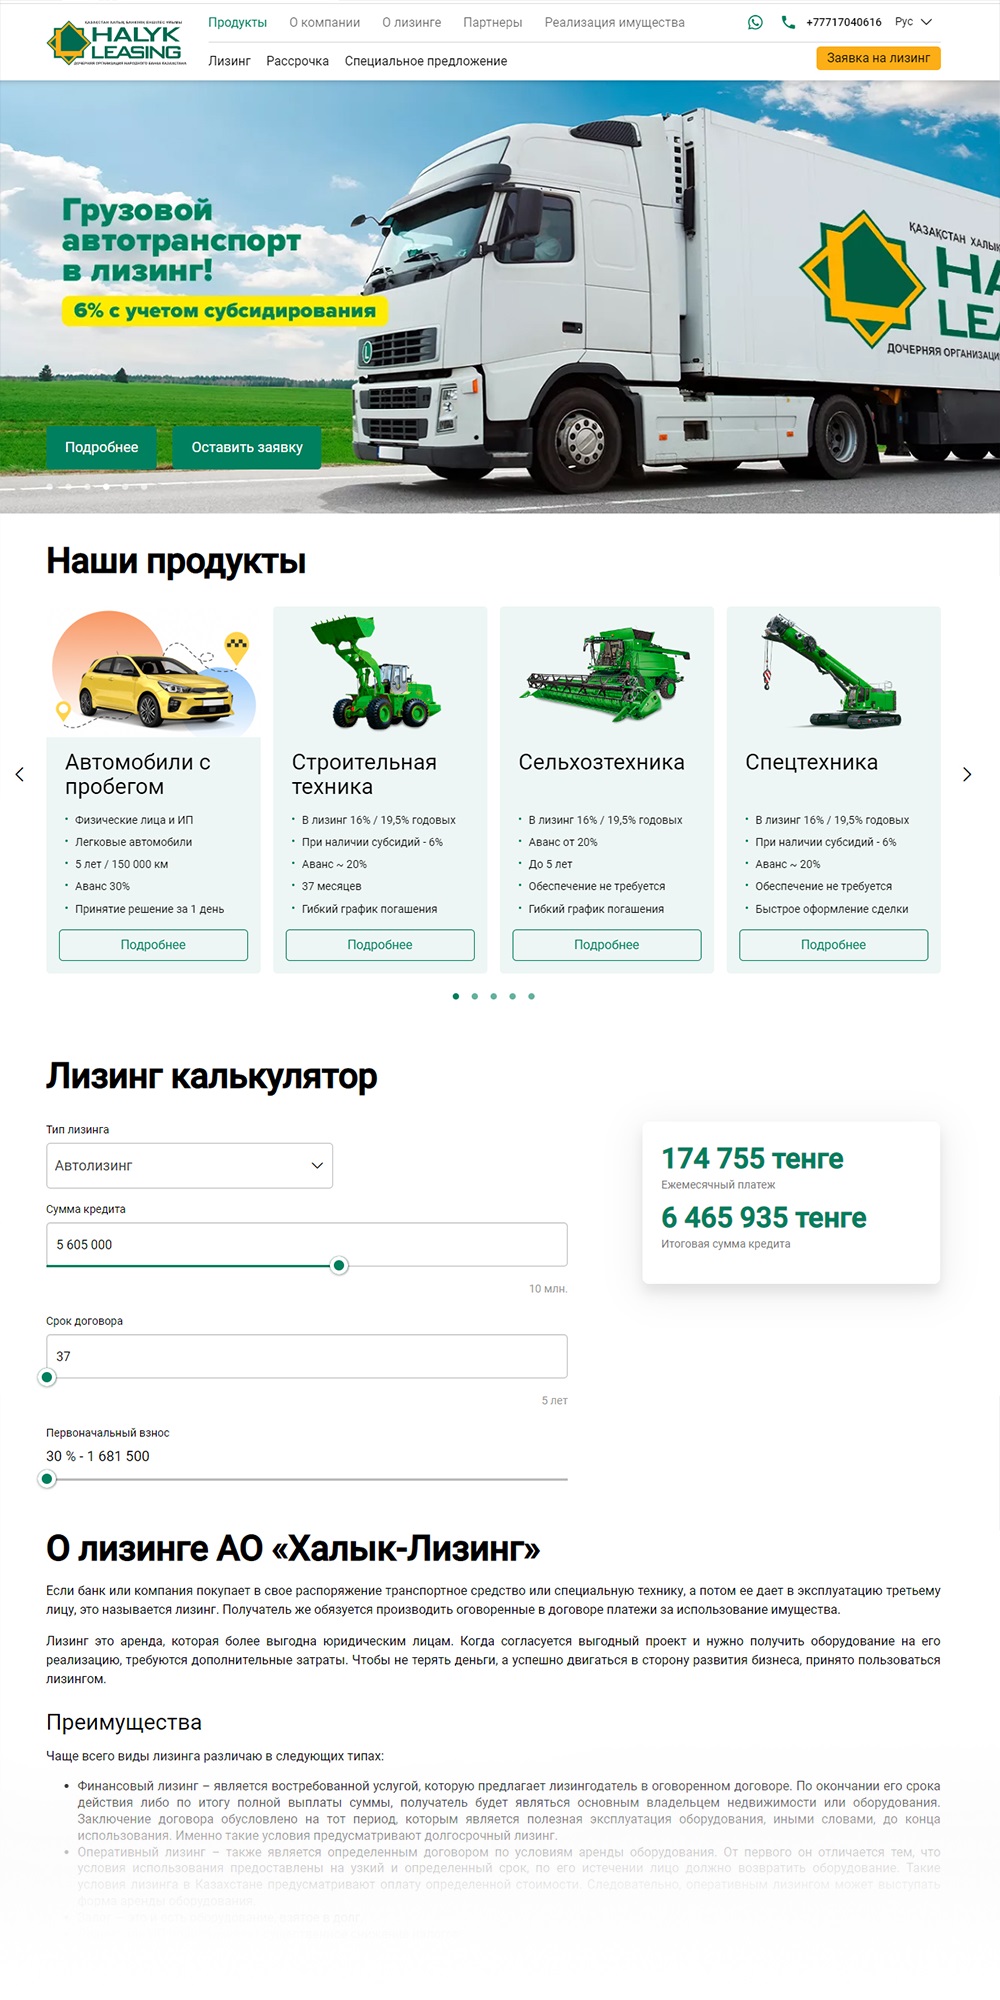 рекламные услуги seo-продвижение создание разработка сайта казахстан настройка на алматы нур-султан астана шымкент